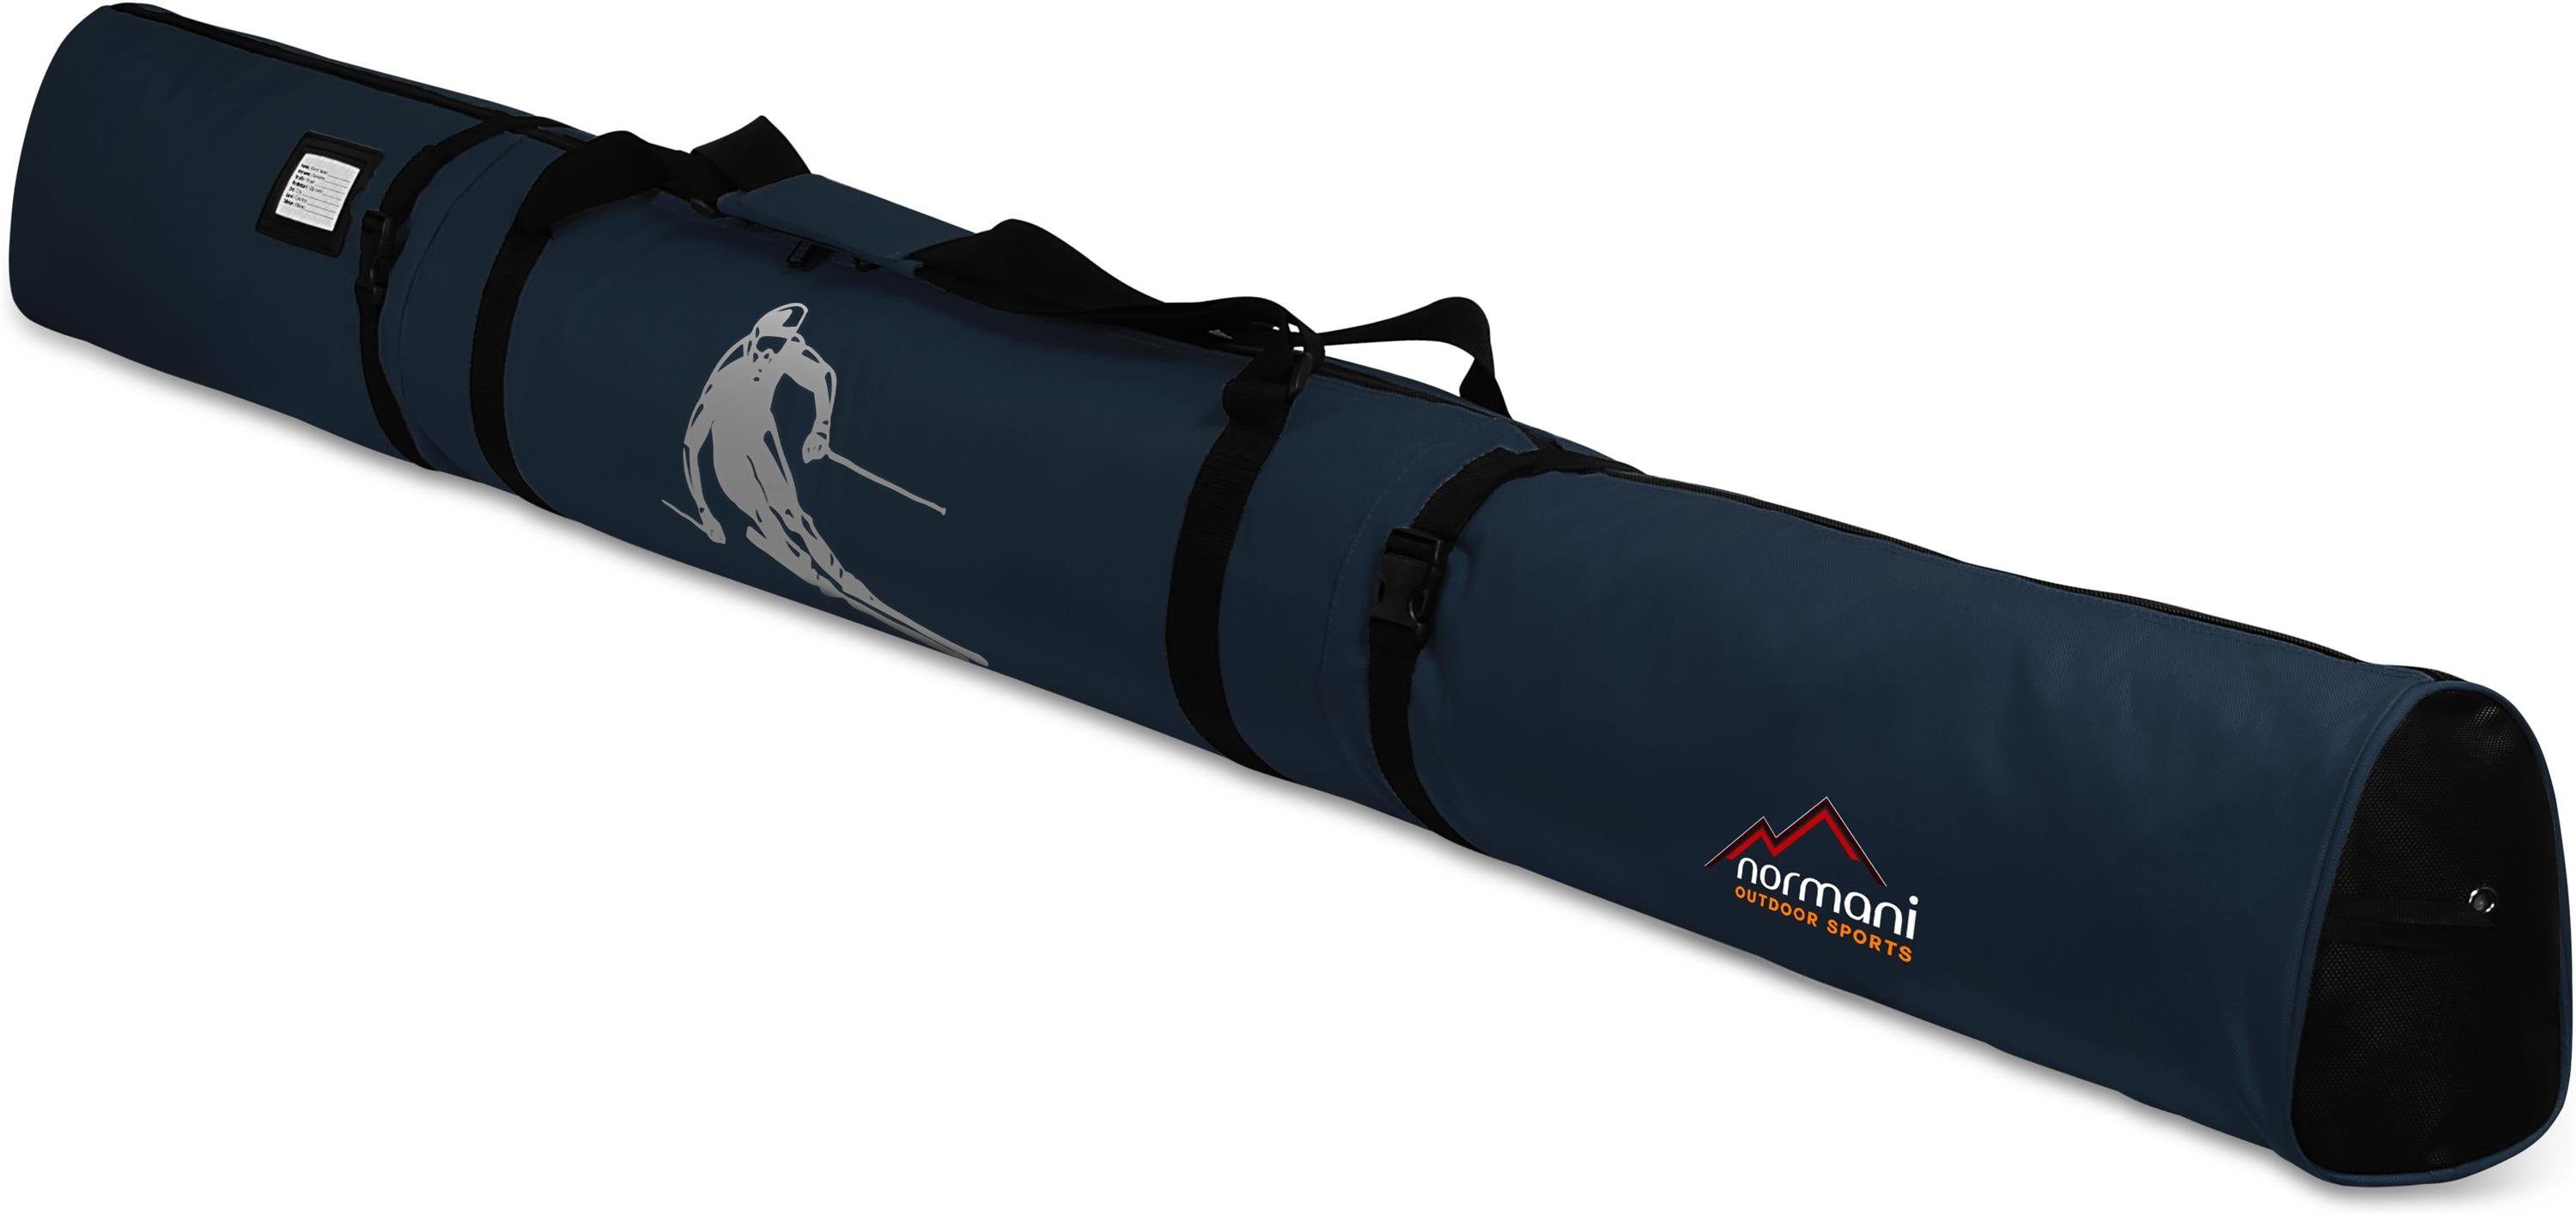 Skihülle Skistöcke Alpine Skitasche für 170, Transporttasche Run Aufbewahrungstasche Marine und Skier normani Skitasche Sporttasche